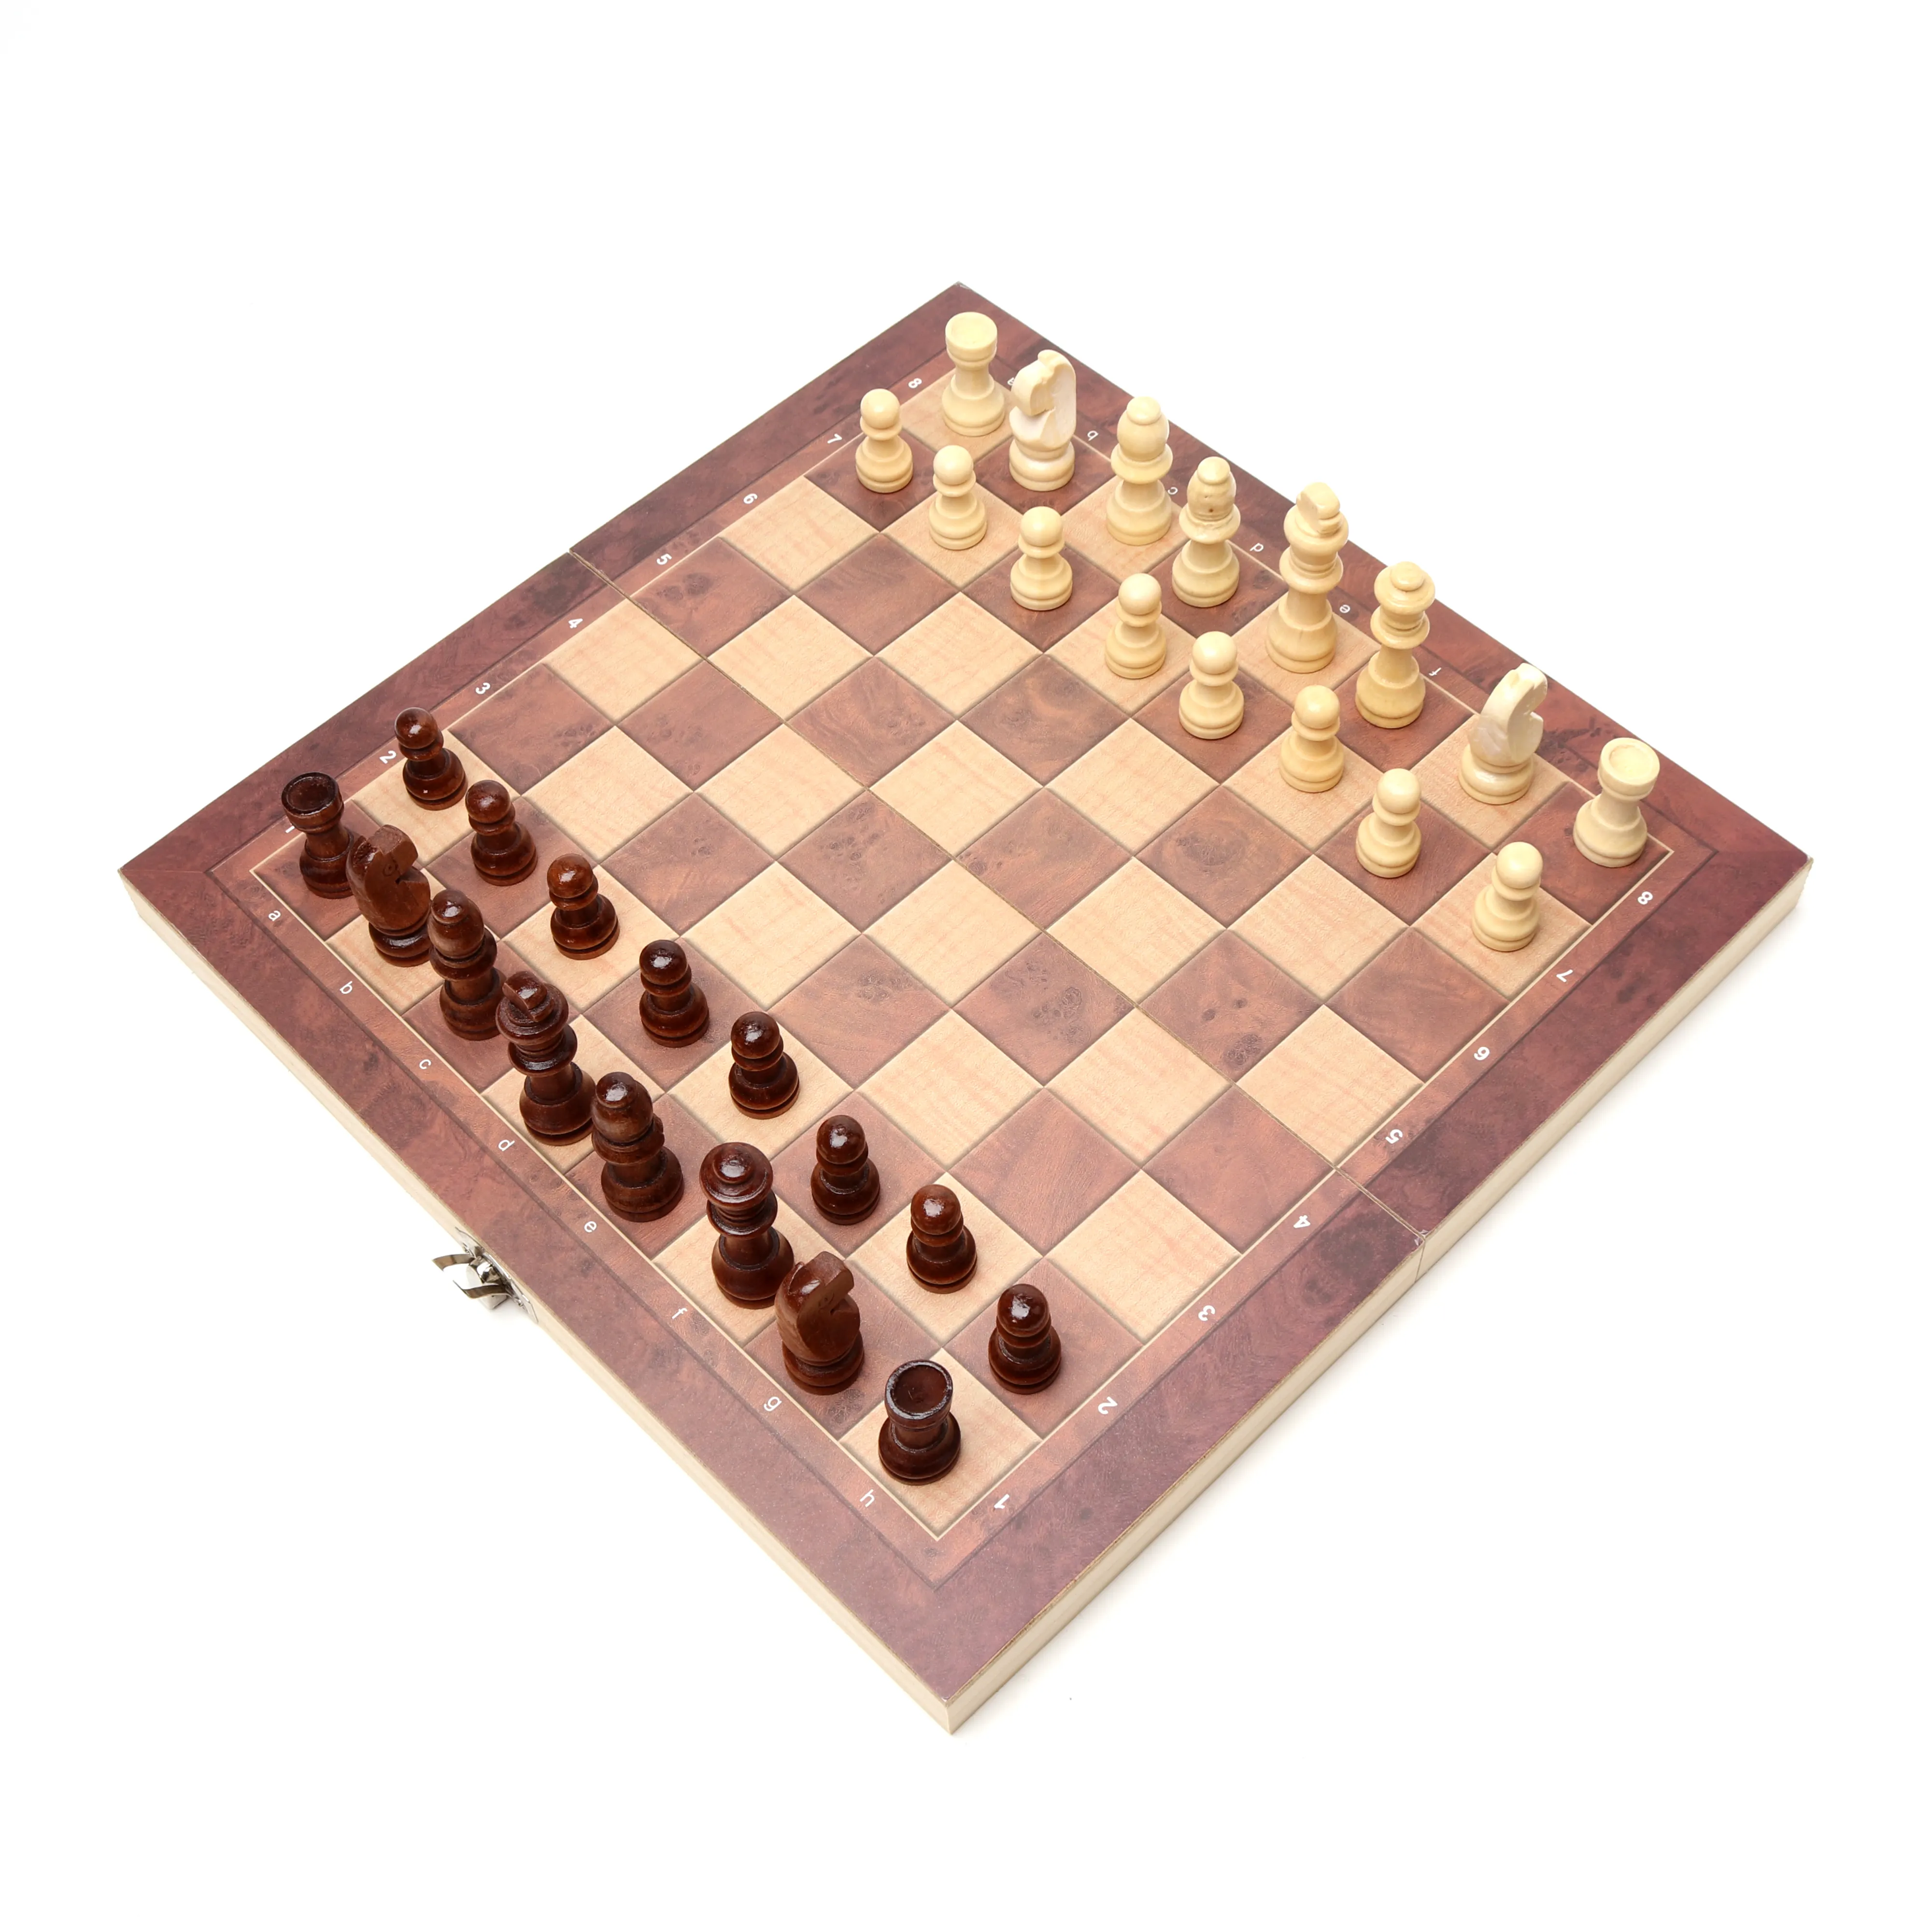 Juego de ajedrez de Backgammon plegable multifunción, juego de ajedrez de madera de lujo